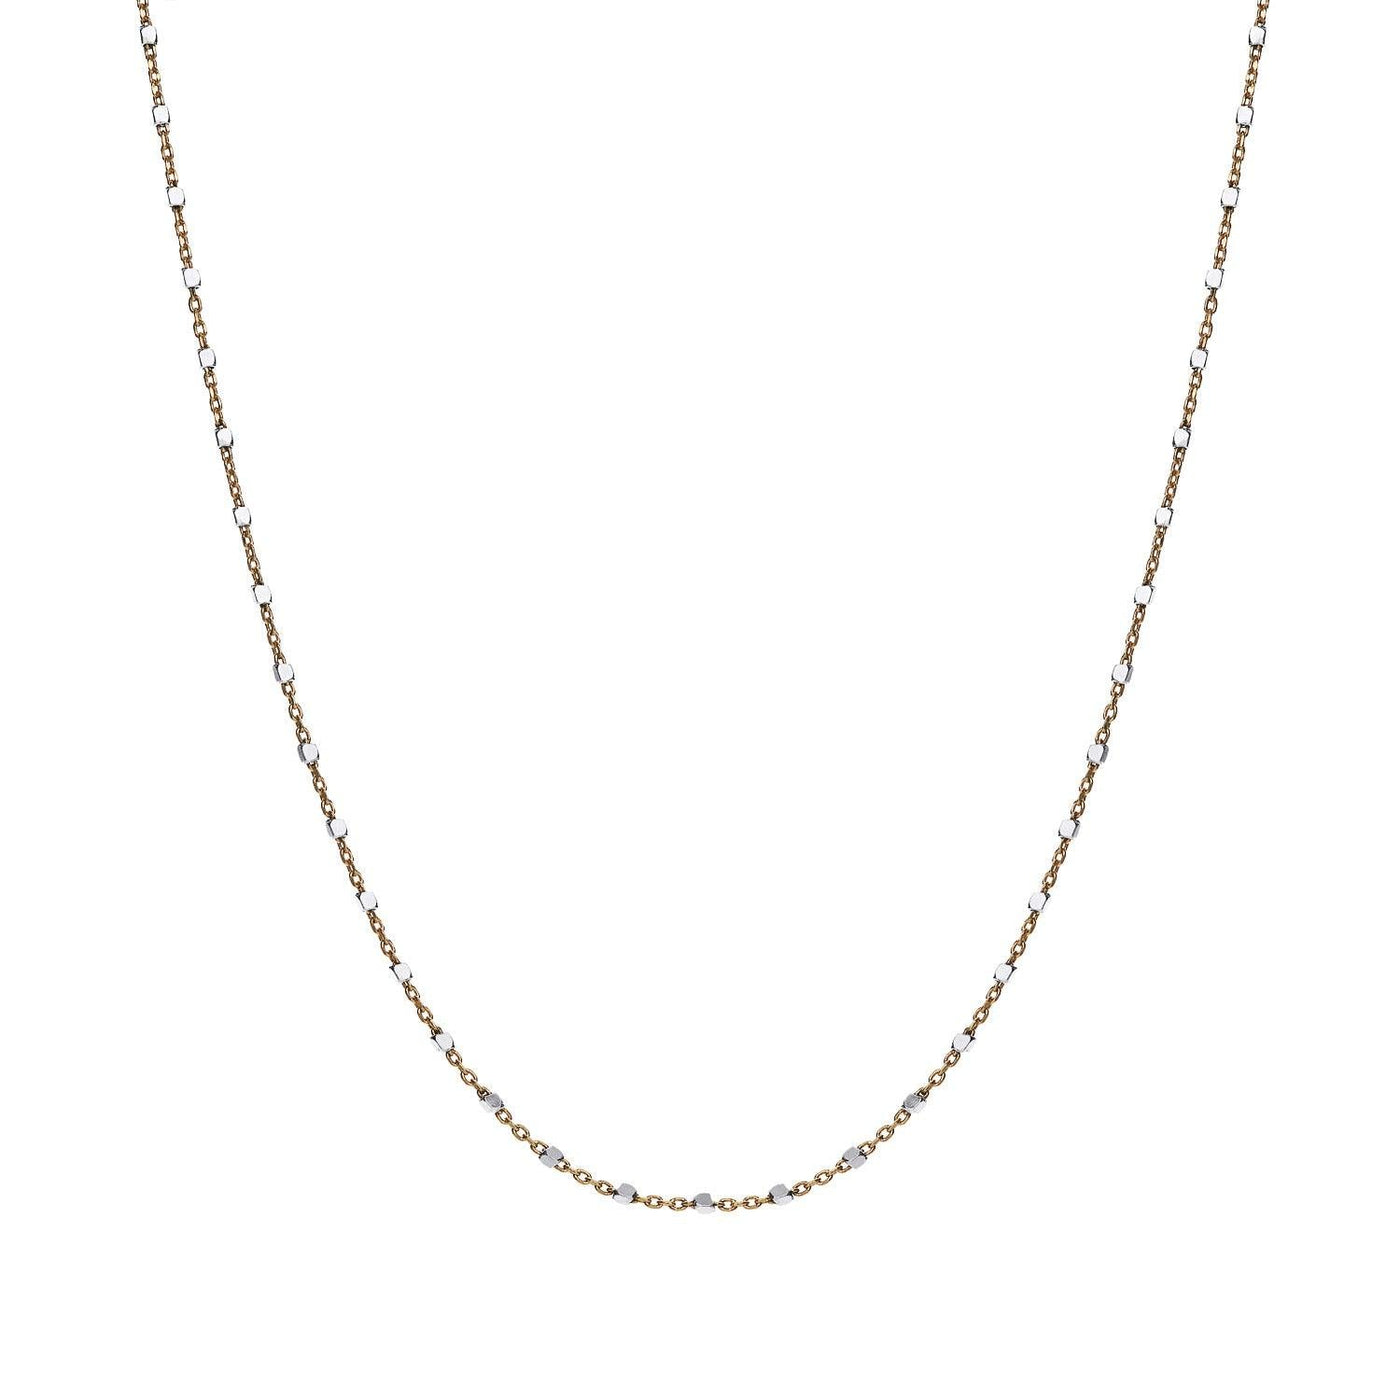 KETTE MIT WÜRFELCHEN ◦ 925' Silber bicolor - Halskette - iz-el